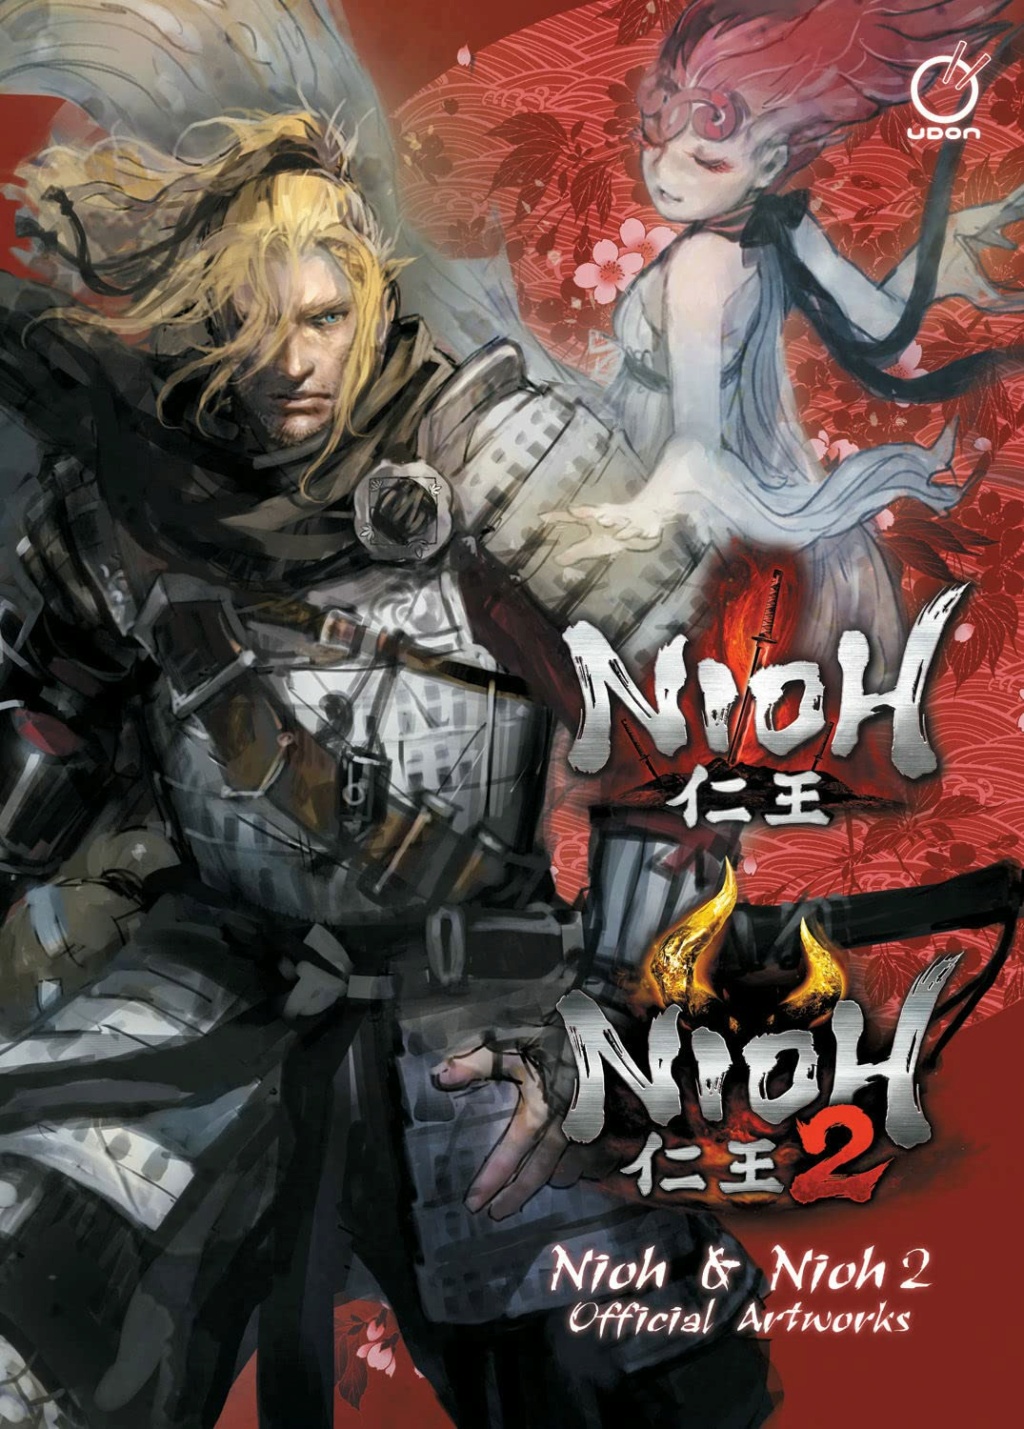 Nioh & Nioh 2 : Official Artworks (Artbook) Anglais 71rz9x10